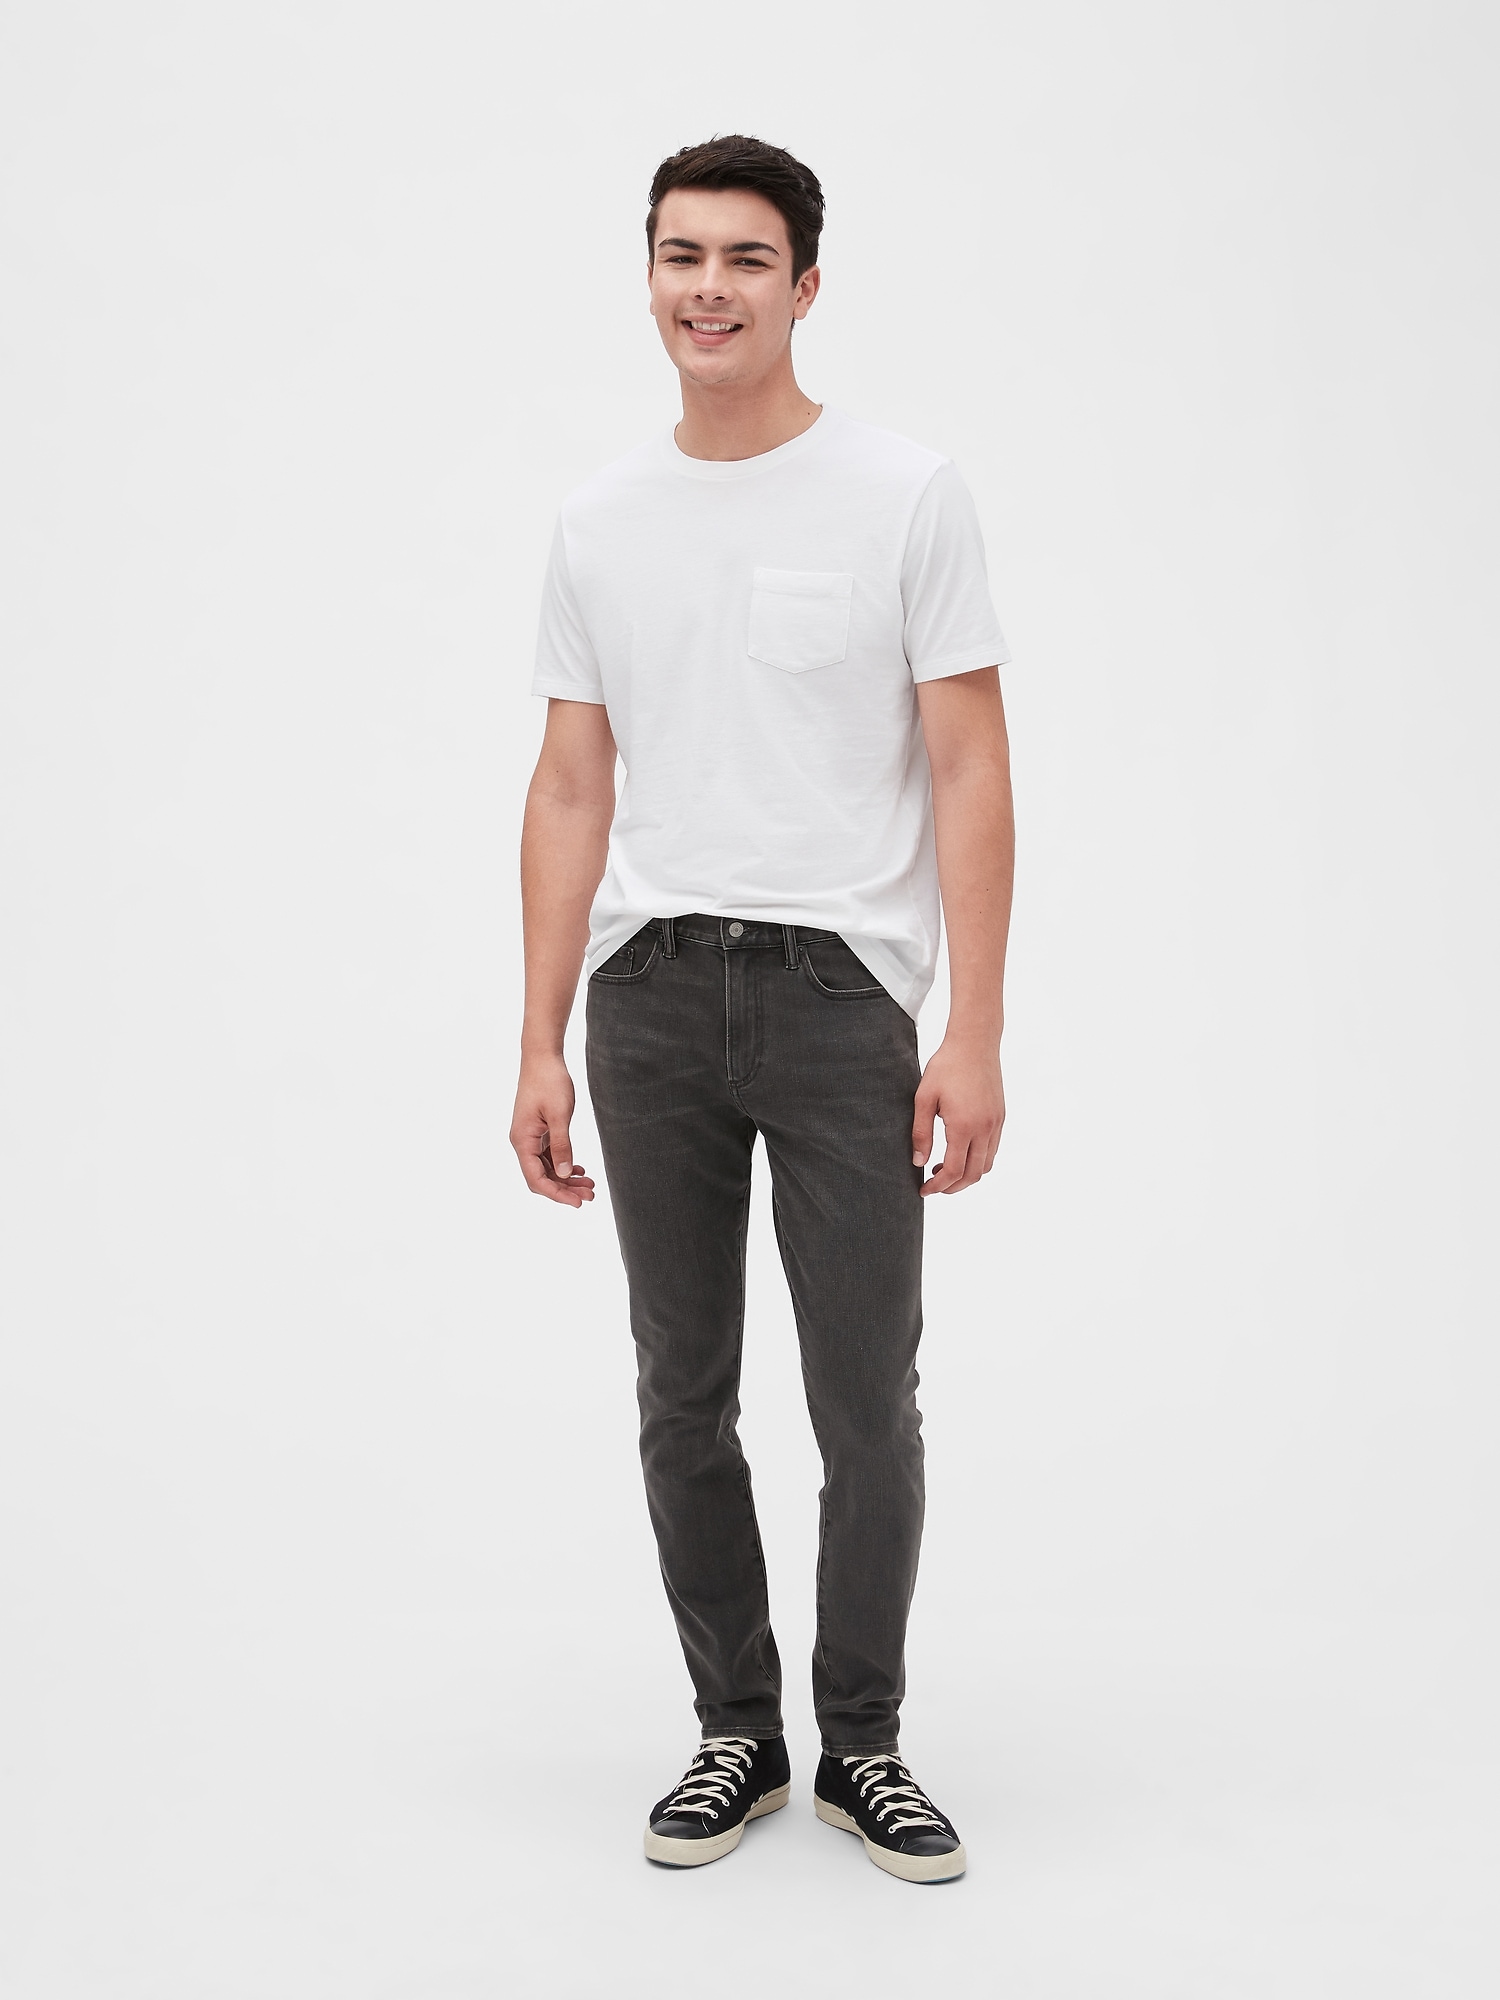 Soft Wear Skinny Jeans with GapFlex